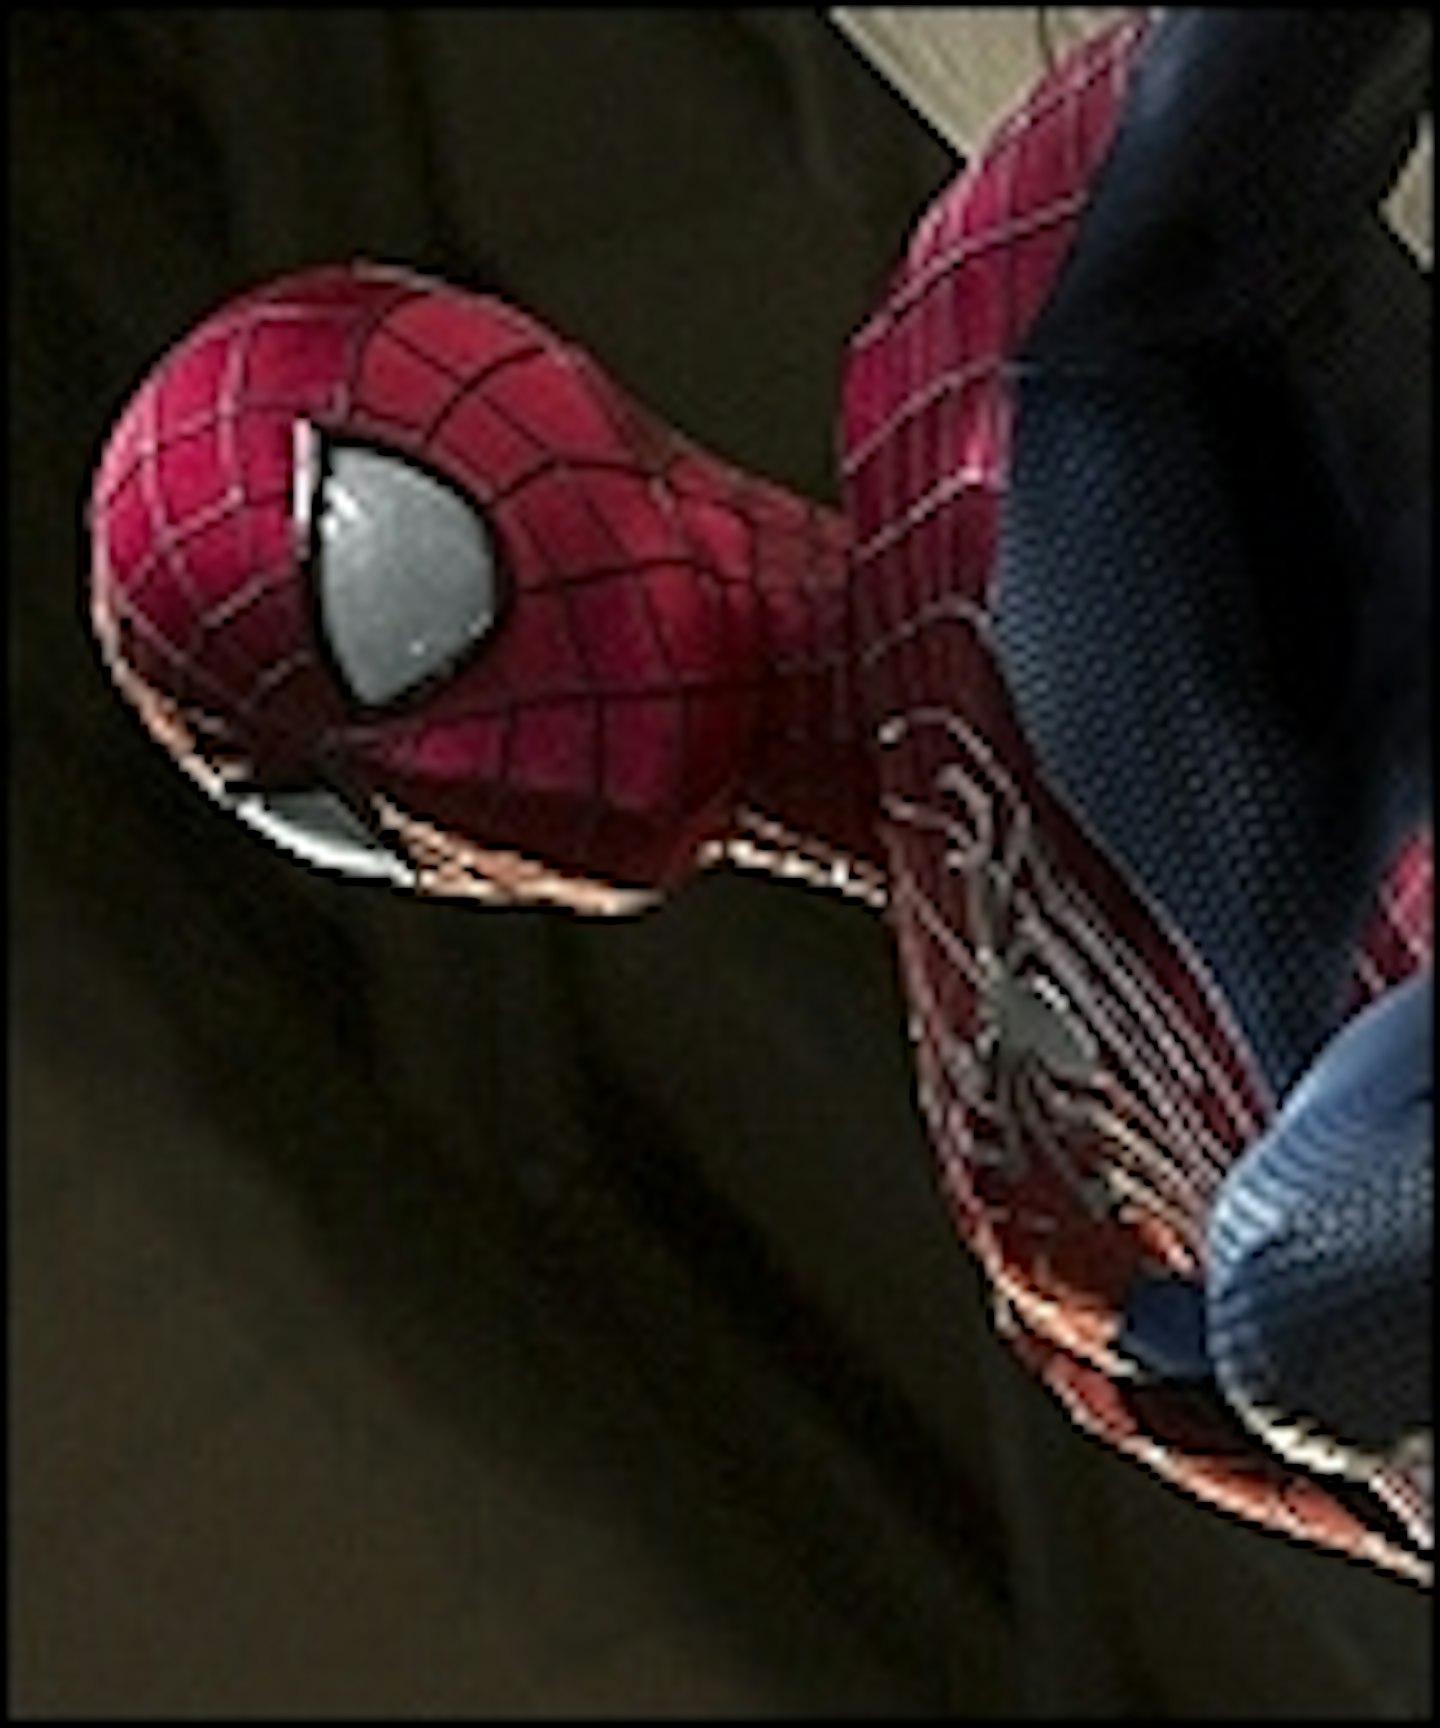 New Amazing Spider-Man 2 Stills Arrive Online